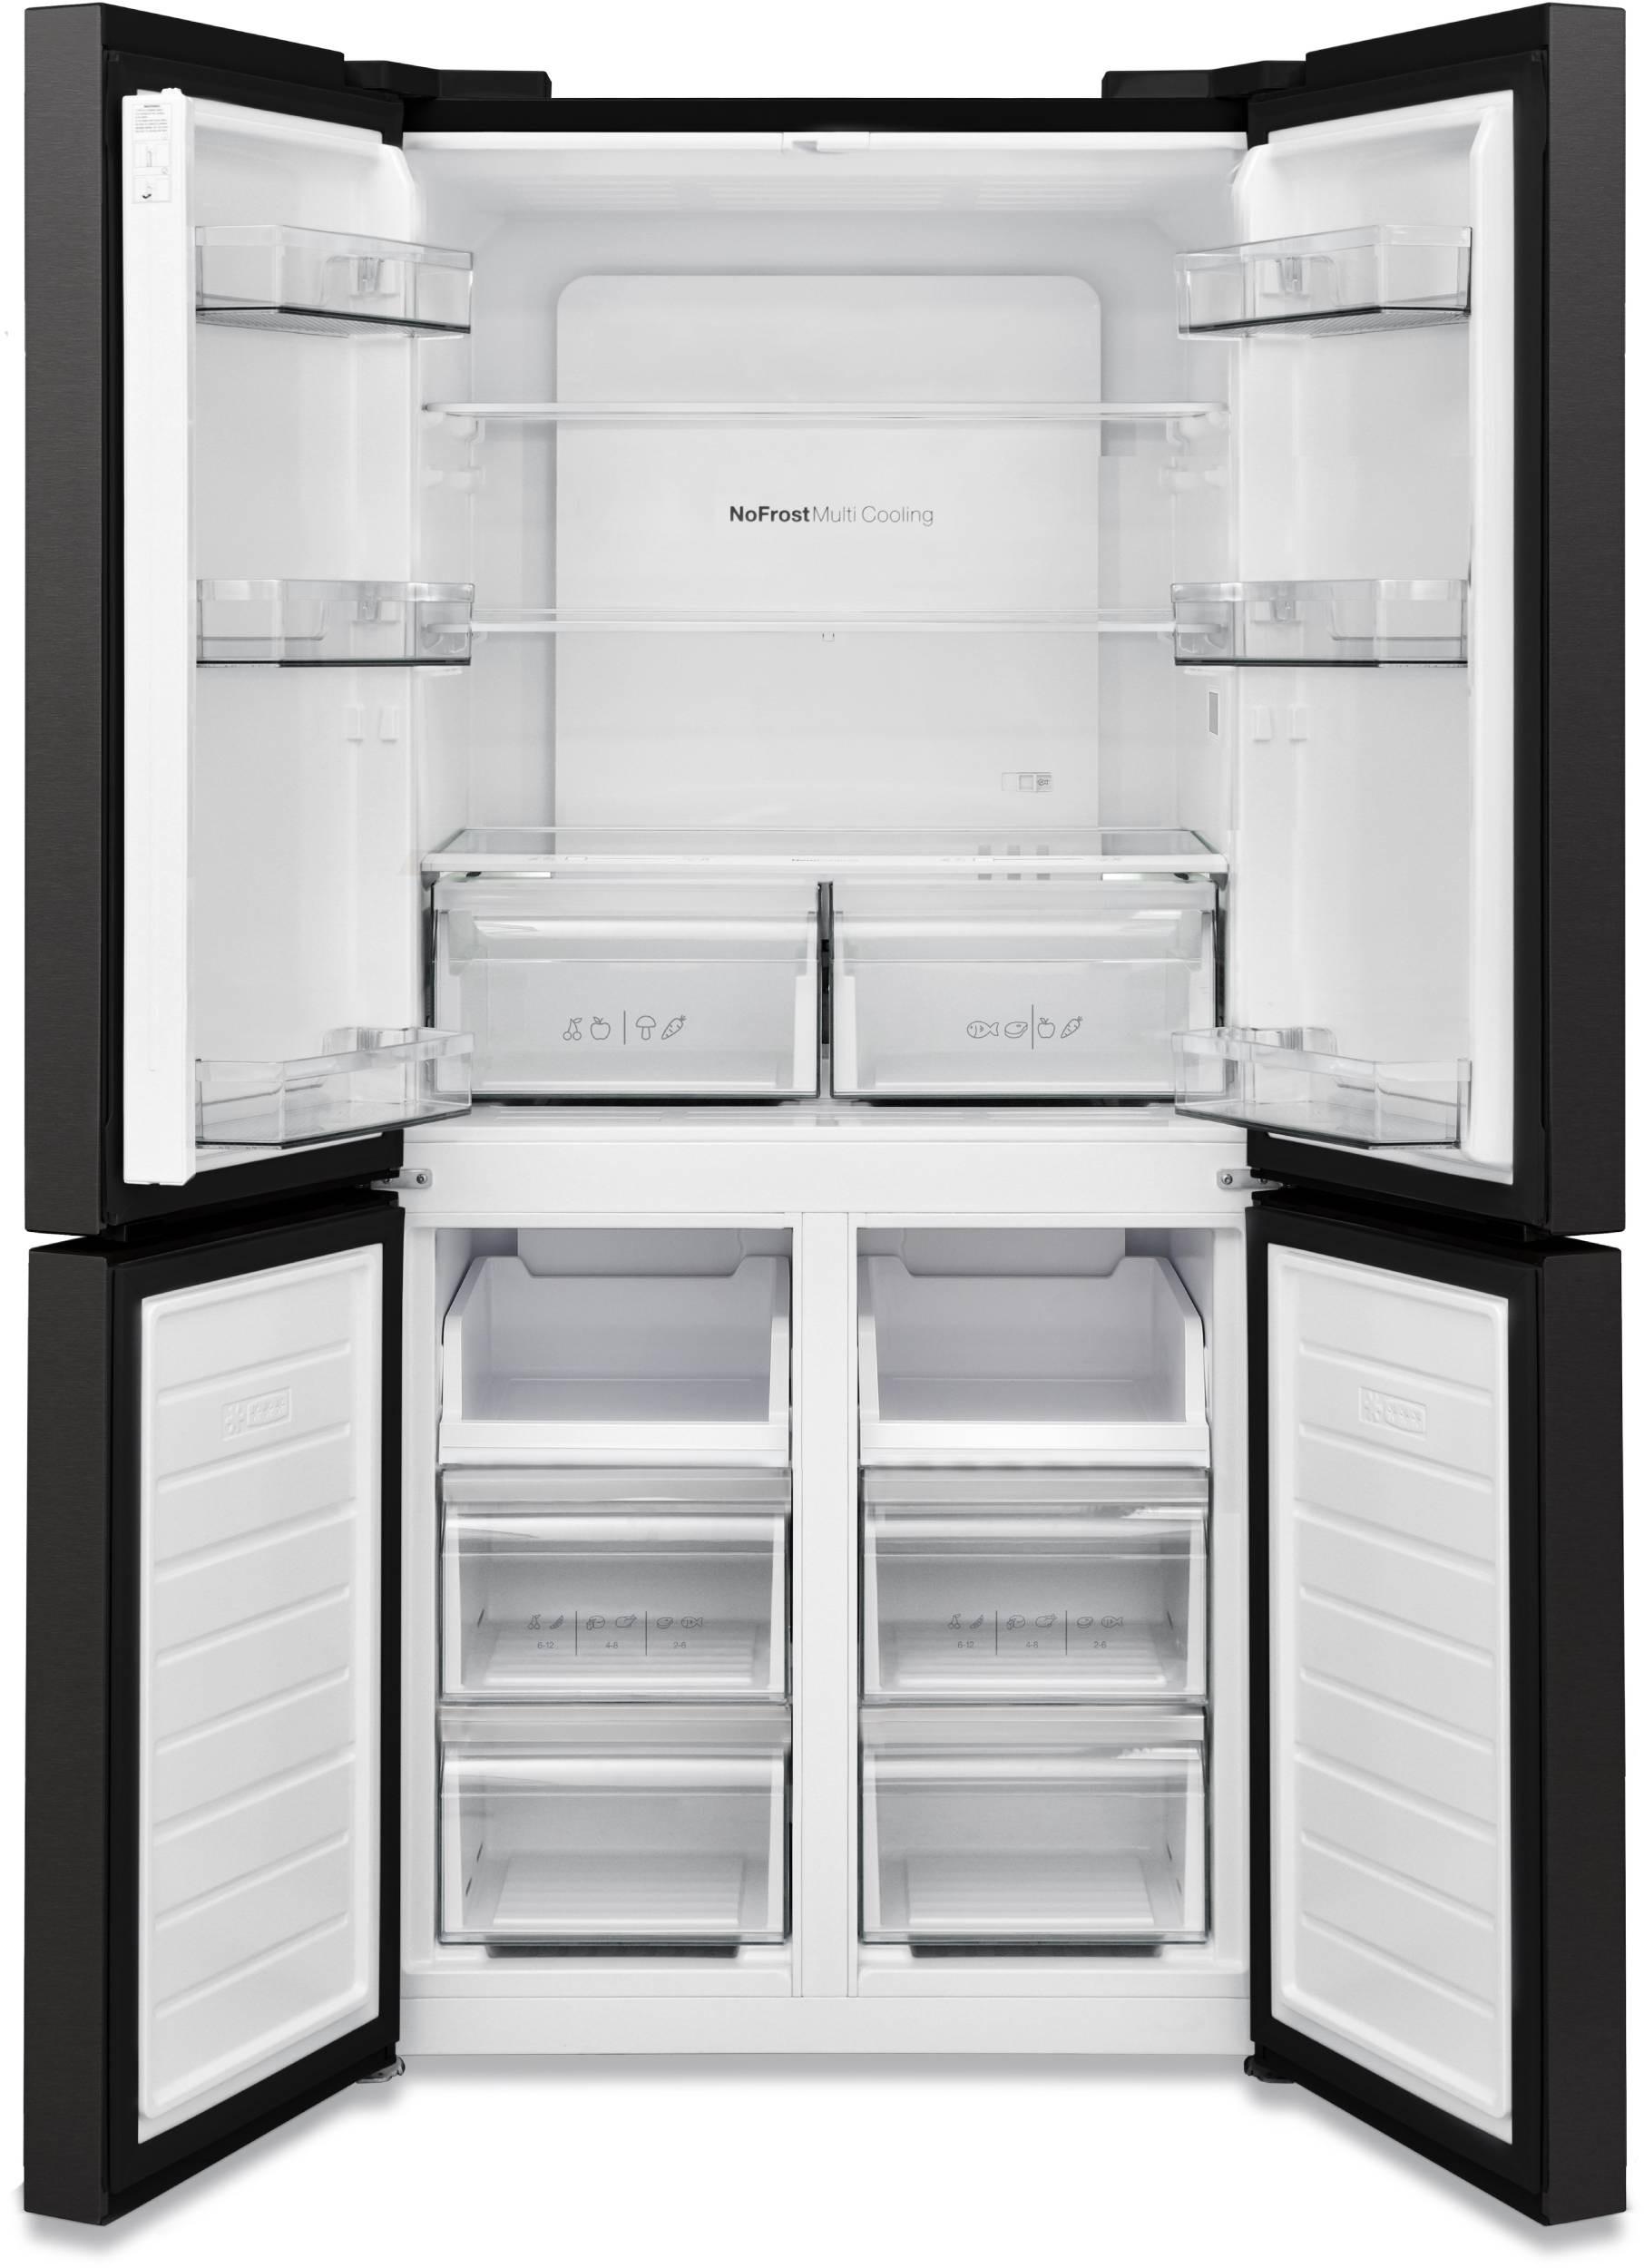 TELEFUNKEN Réfrigérateur 4 portes No Frost 488L Noir - R4P488K2